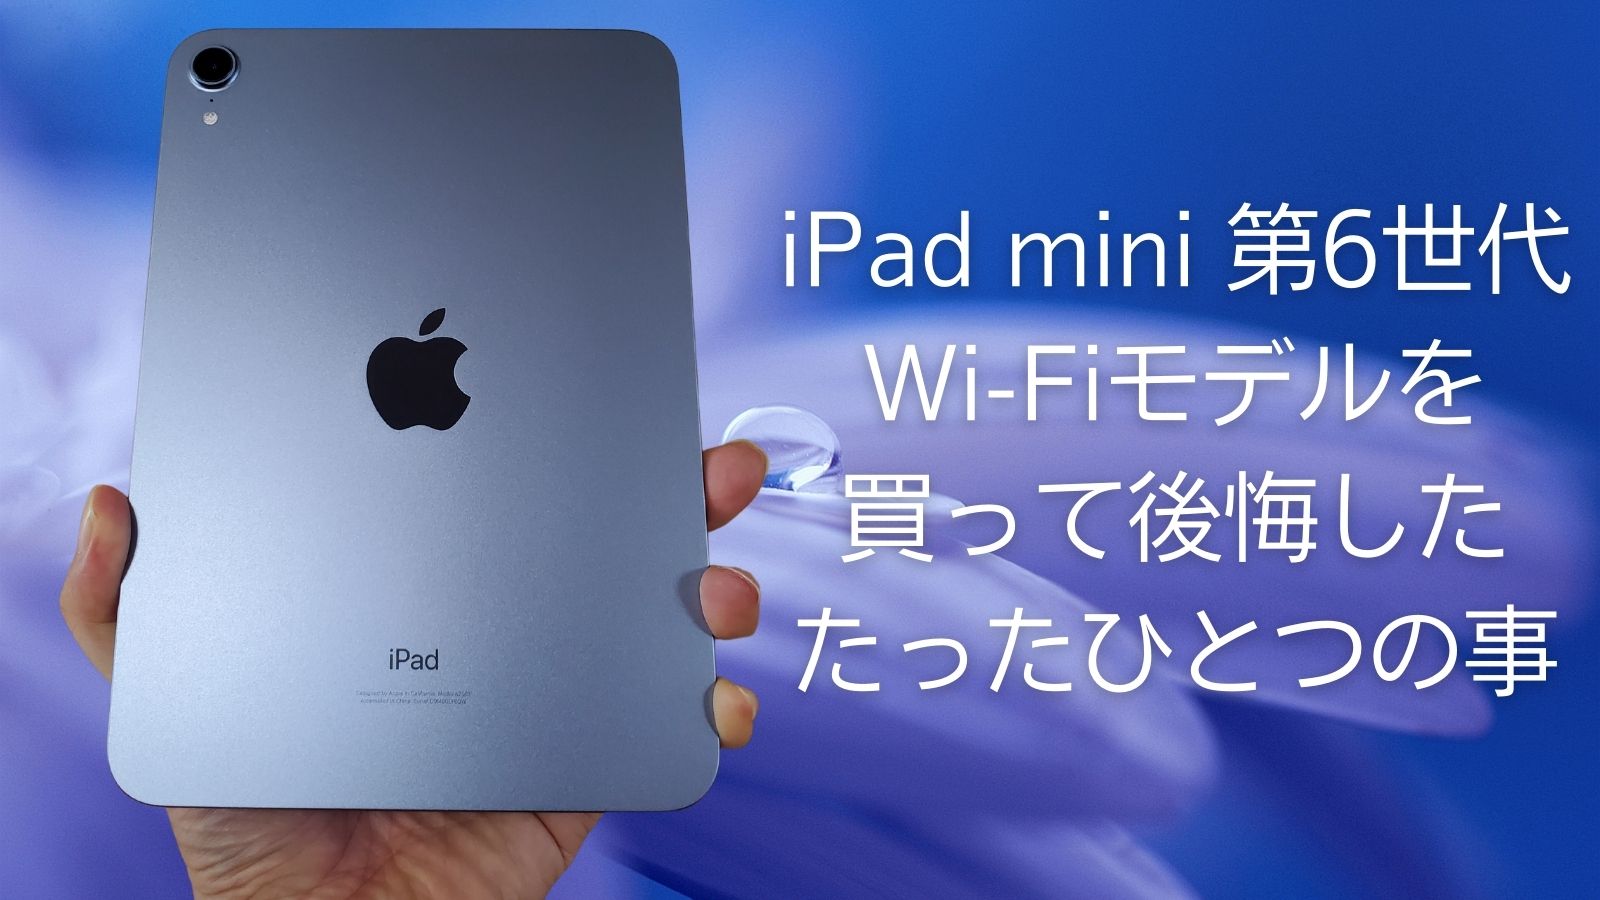 日本直販オンライン iPad パープル 64GB Wi-Fi+Cellular 6 mini タブレット